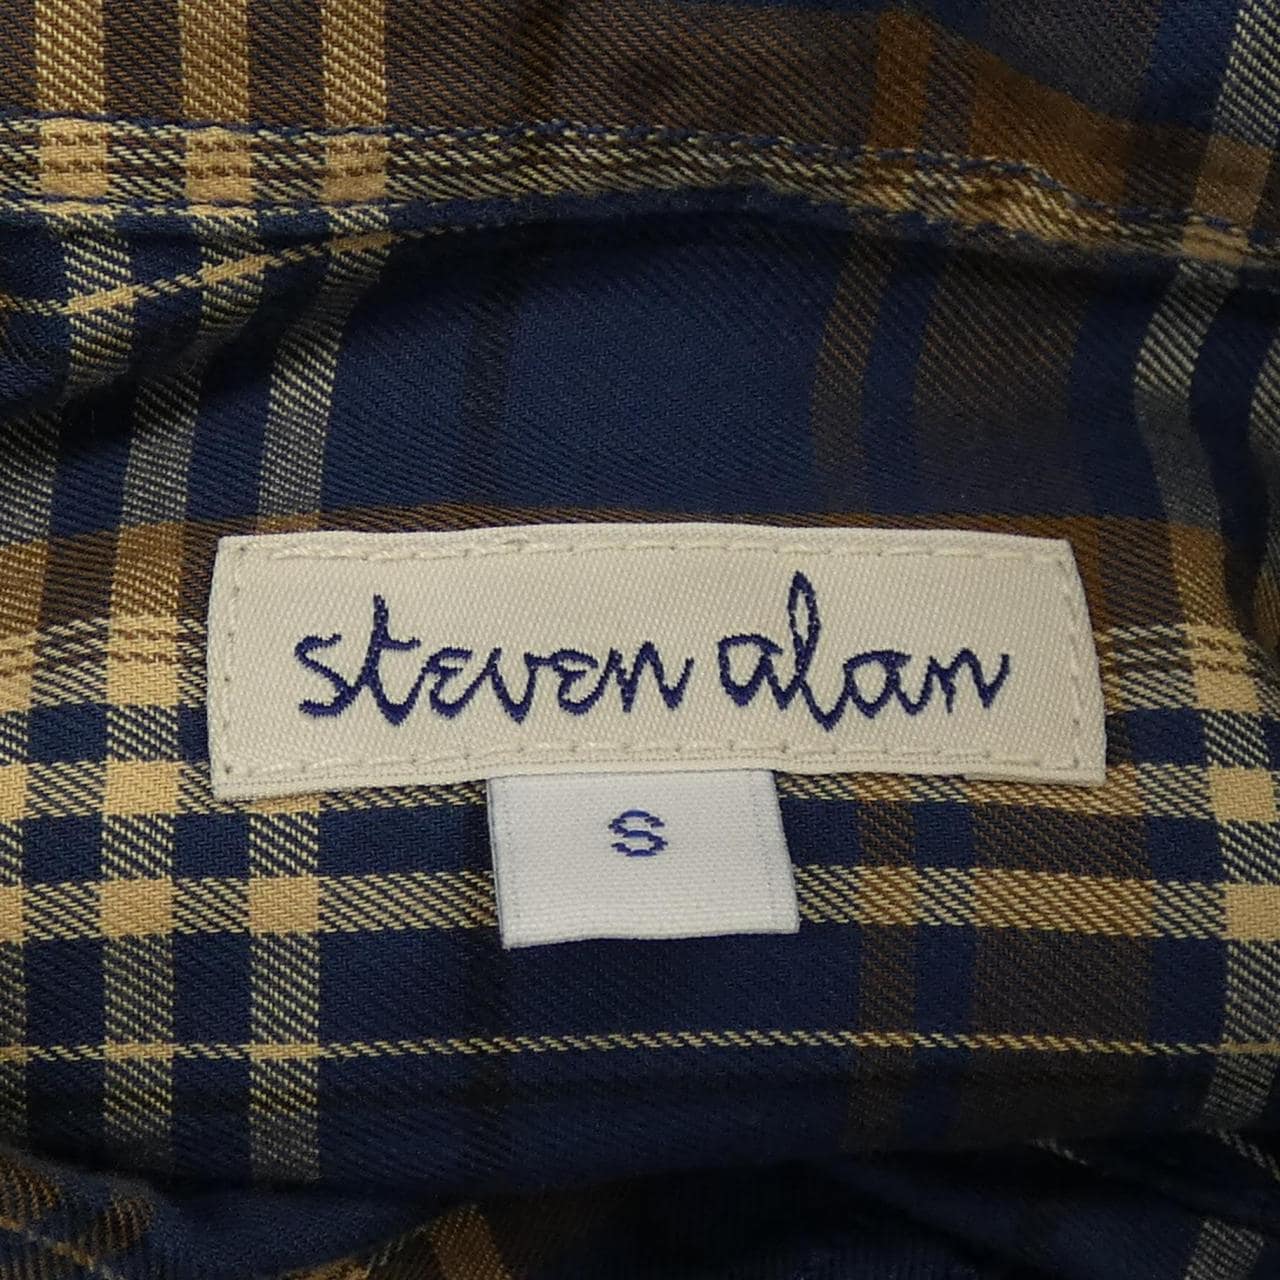 Stephen Alan STEVEN ALAN shirt